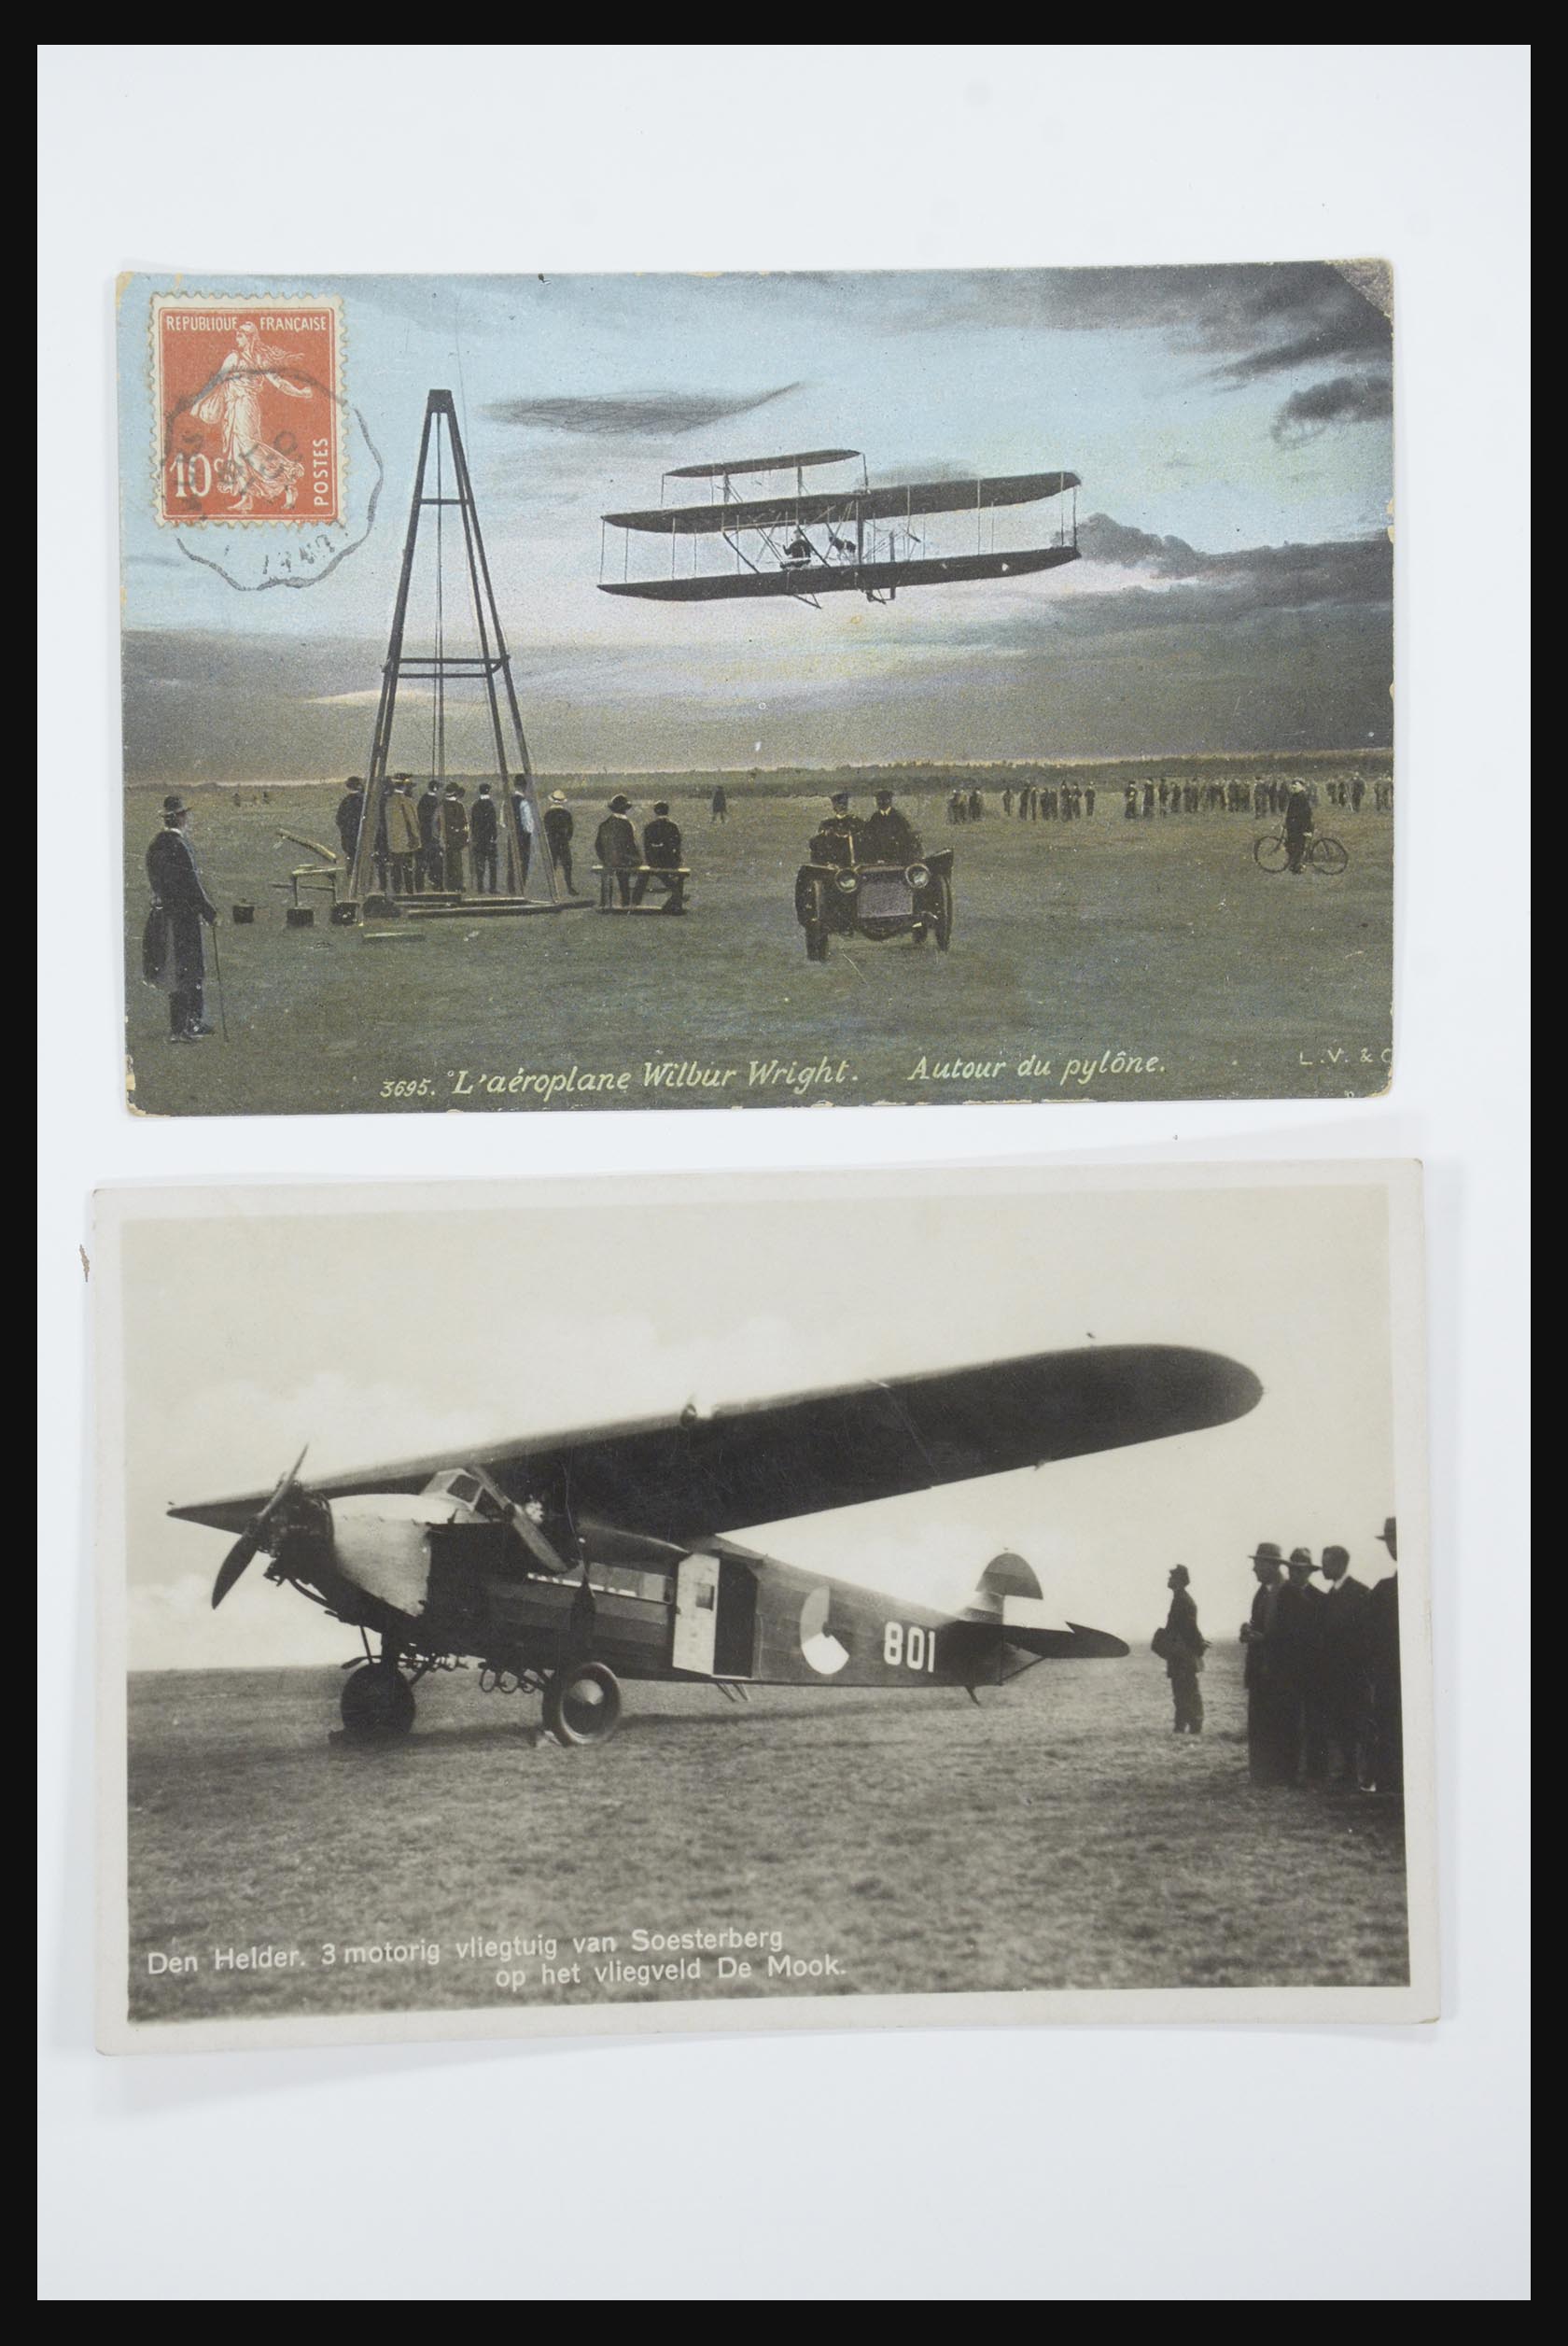 31668 021 - 31668 Nederland ansichtkaarten 1905-1935.